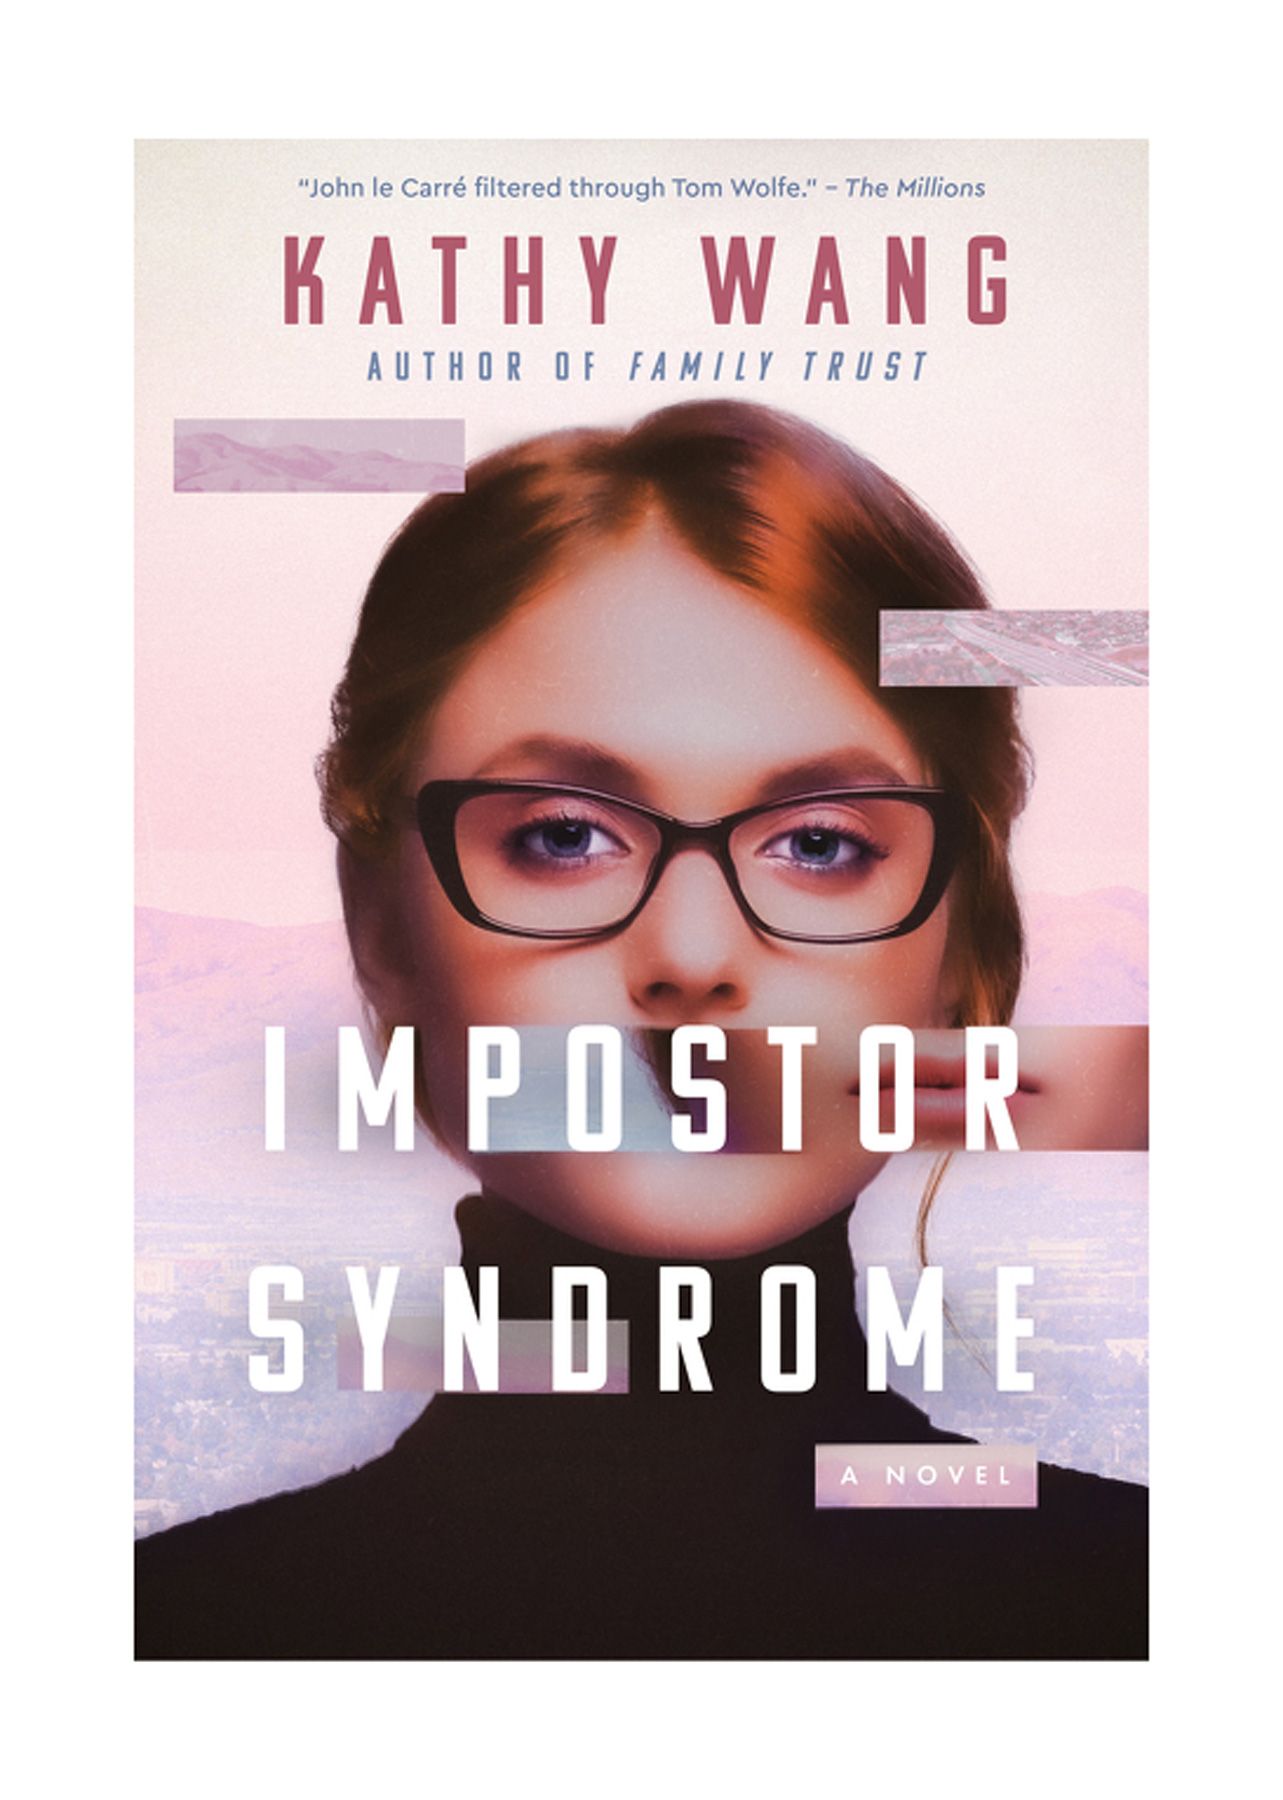 Head raamatud lugemiseks 20ndates eluaastates: petturi sündroom, Kathy Wang